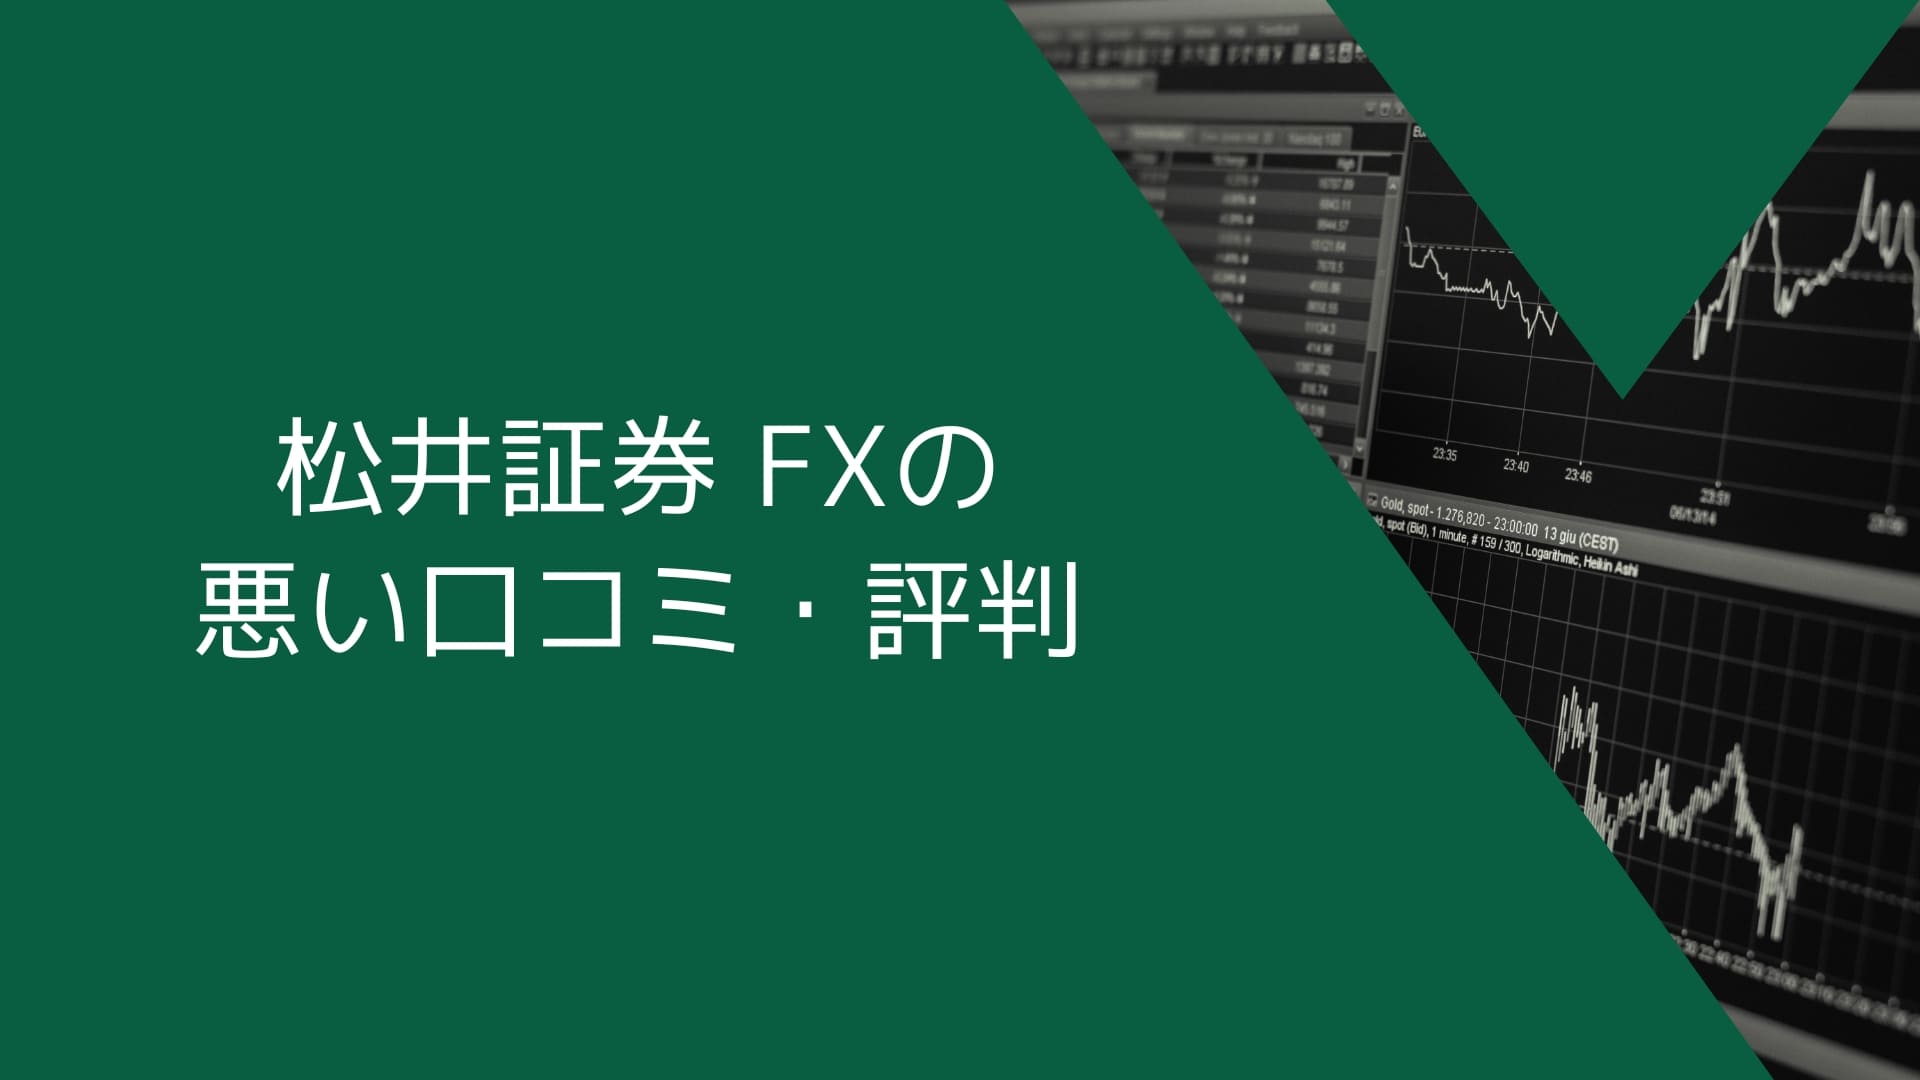 松井証券（MATSUI FX）の悪い口コミ・評判